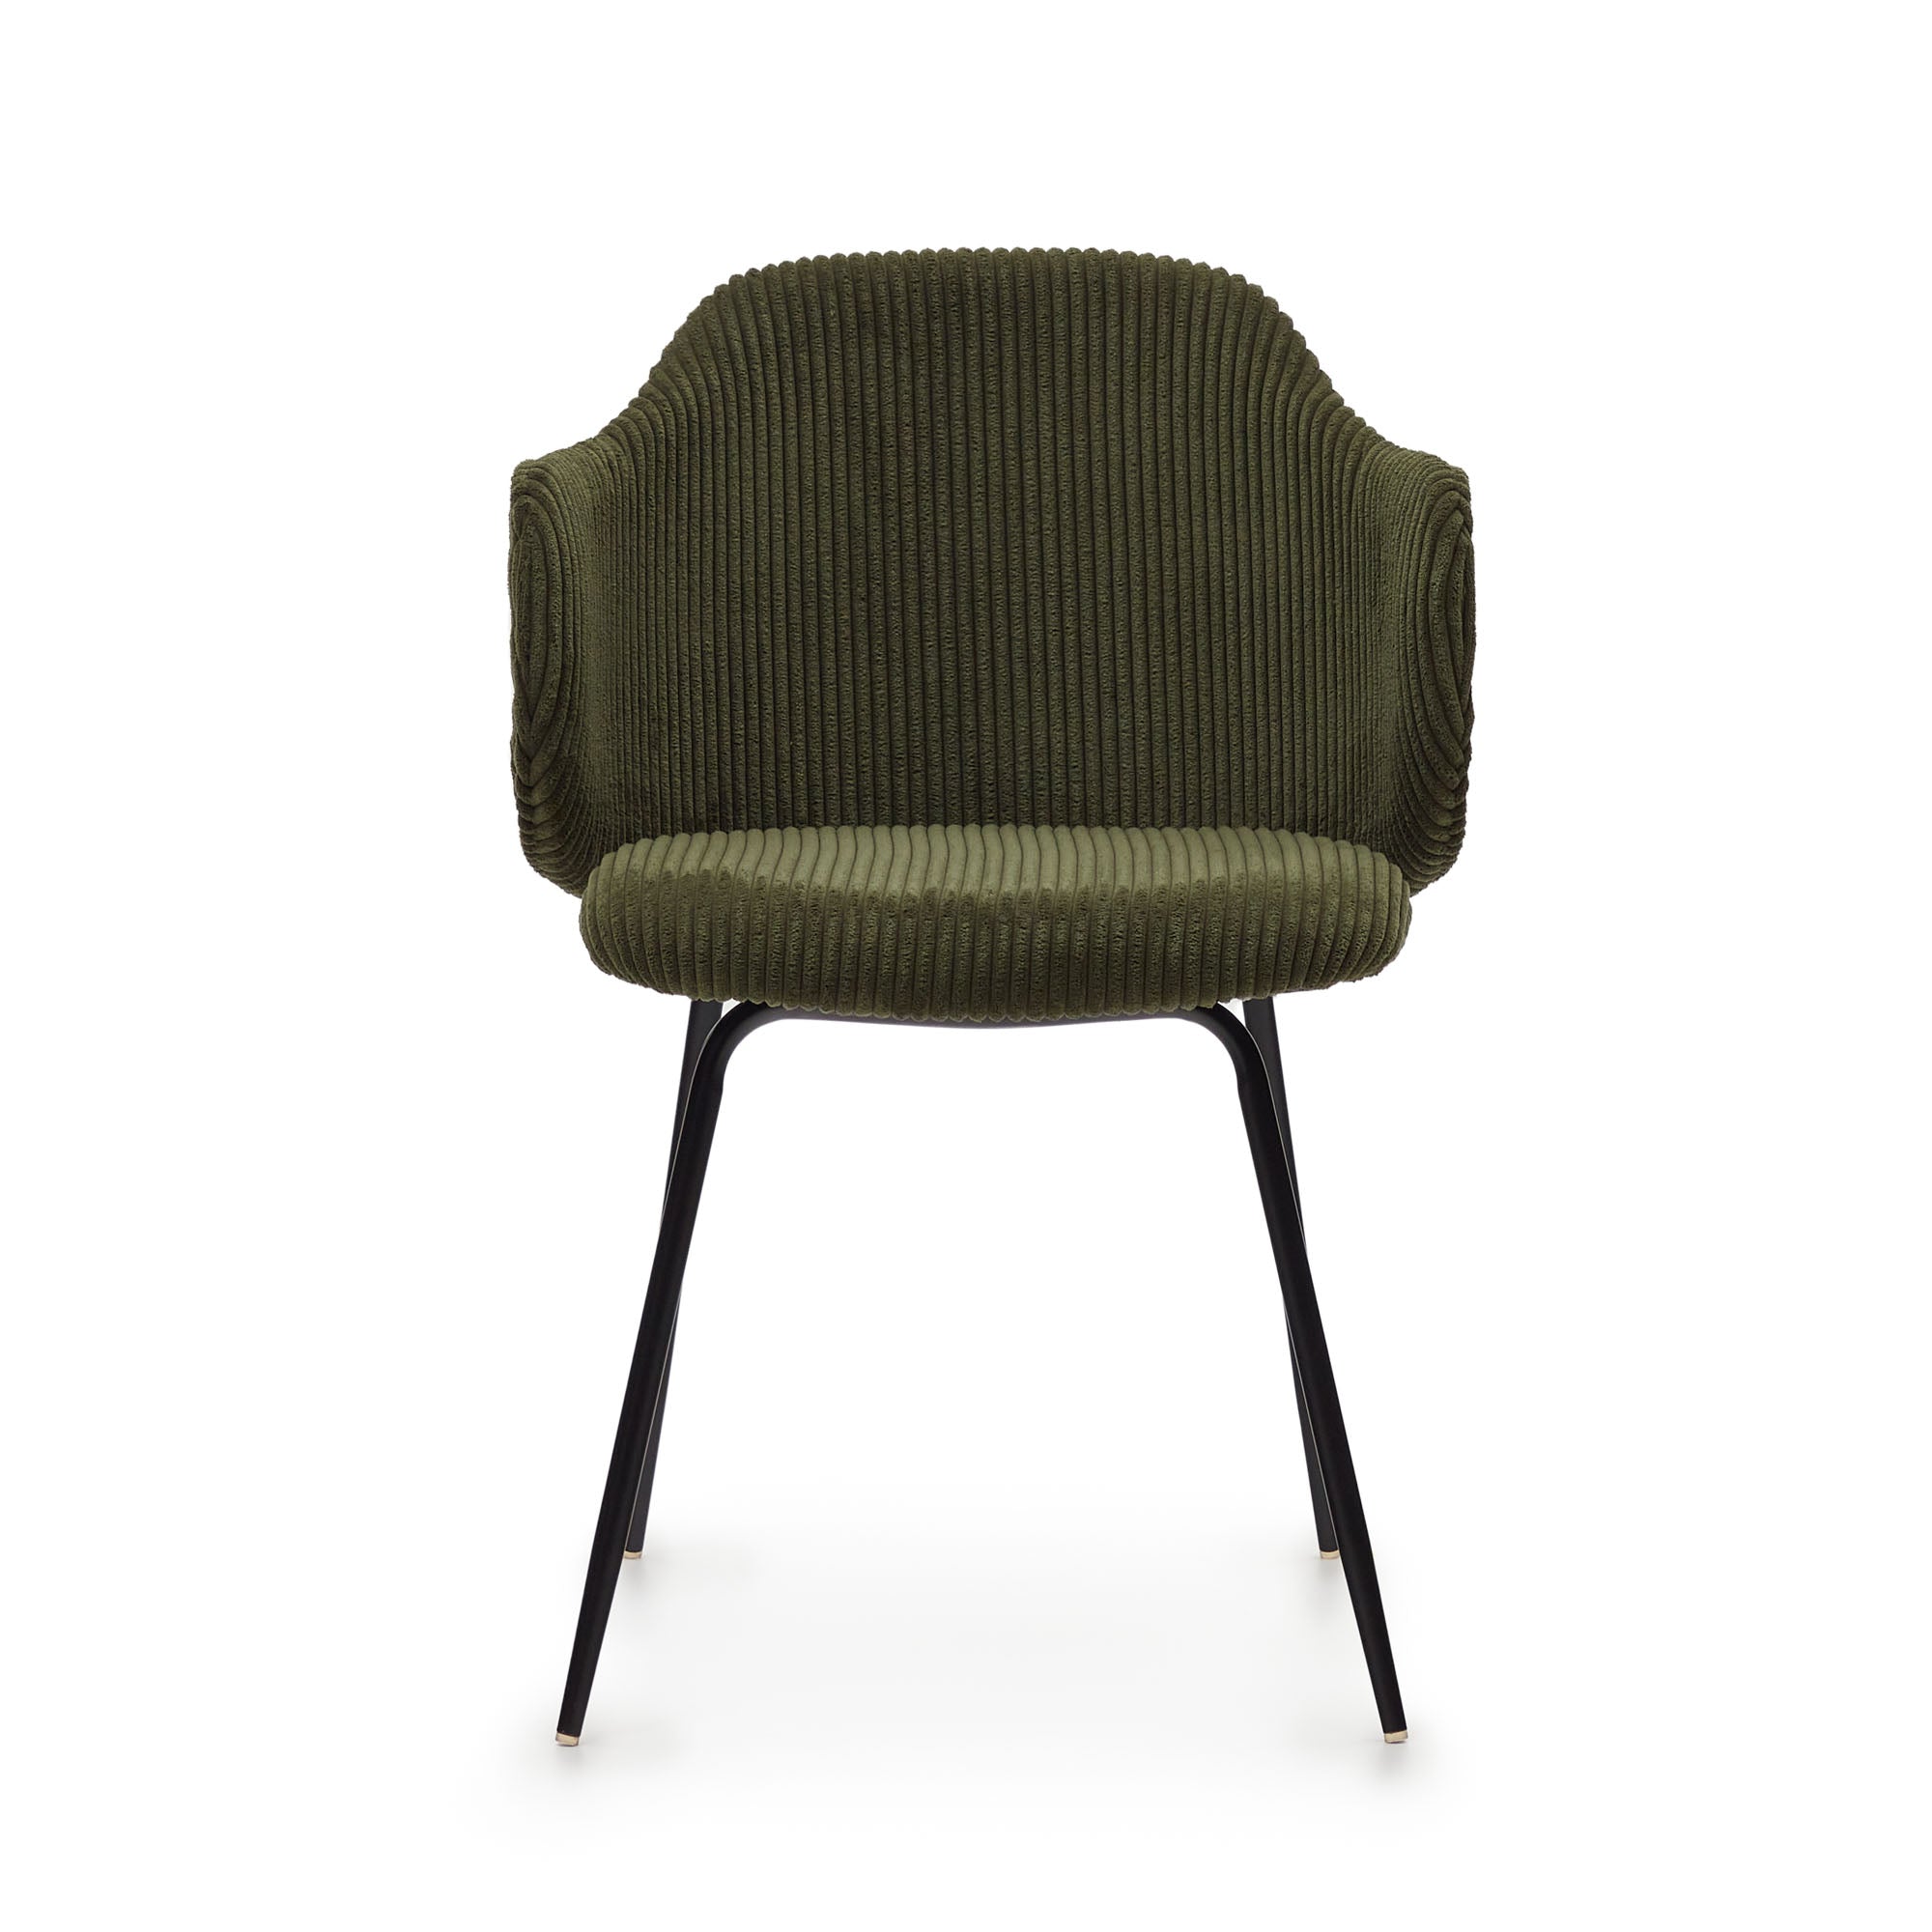 Yunia szék zöld színű, széles varrású kordbársonyból, fekete festett acéllábakkal